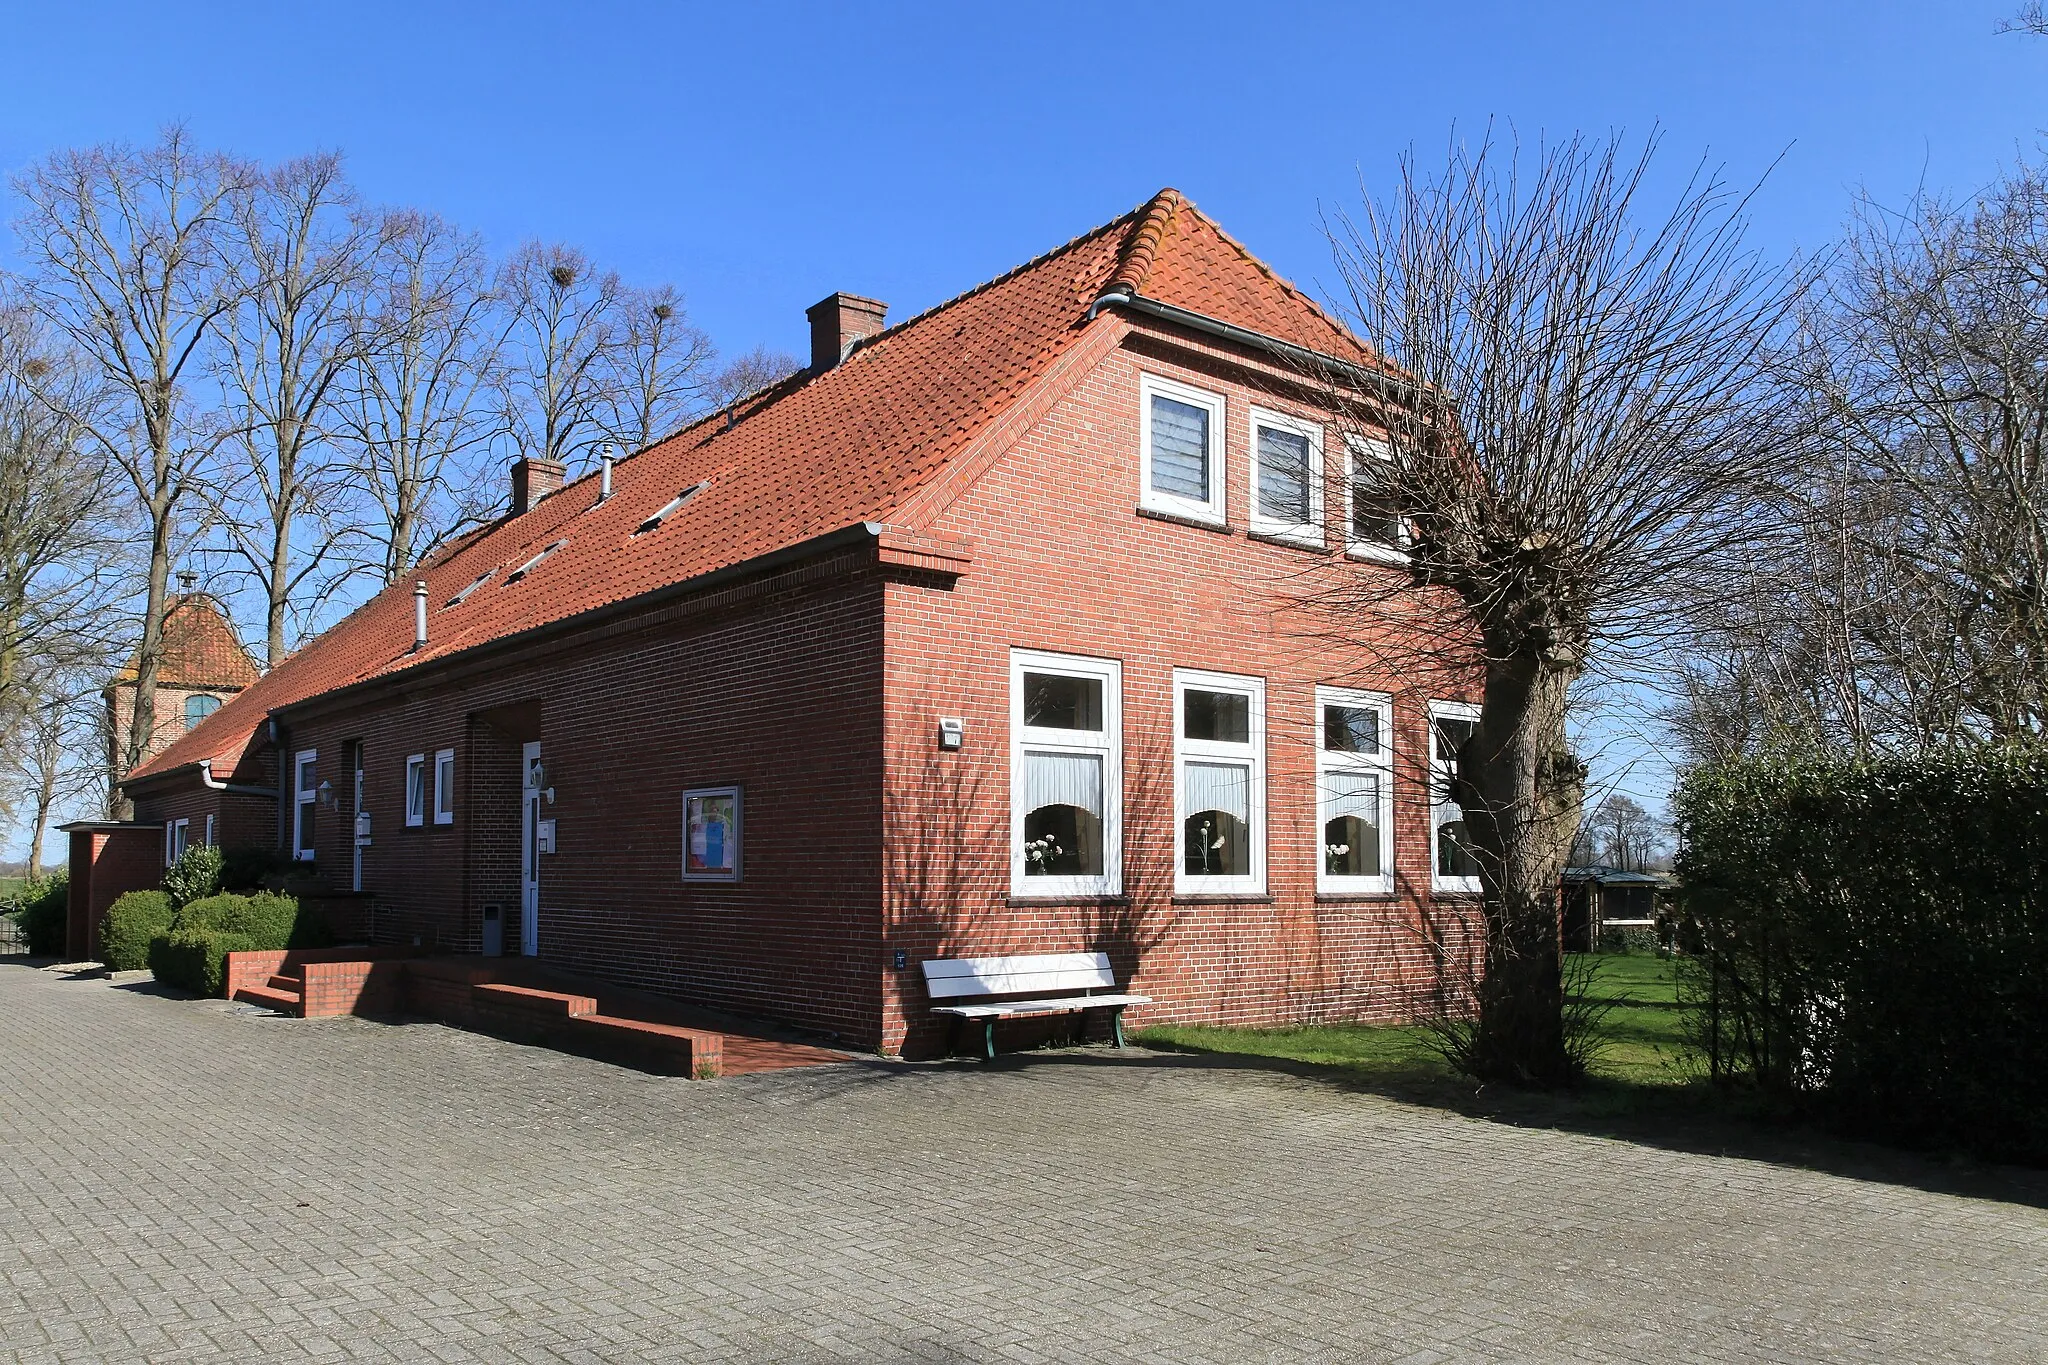 Photo showing: Villdobben mit Pfarrhaus in Vellage, Weener